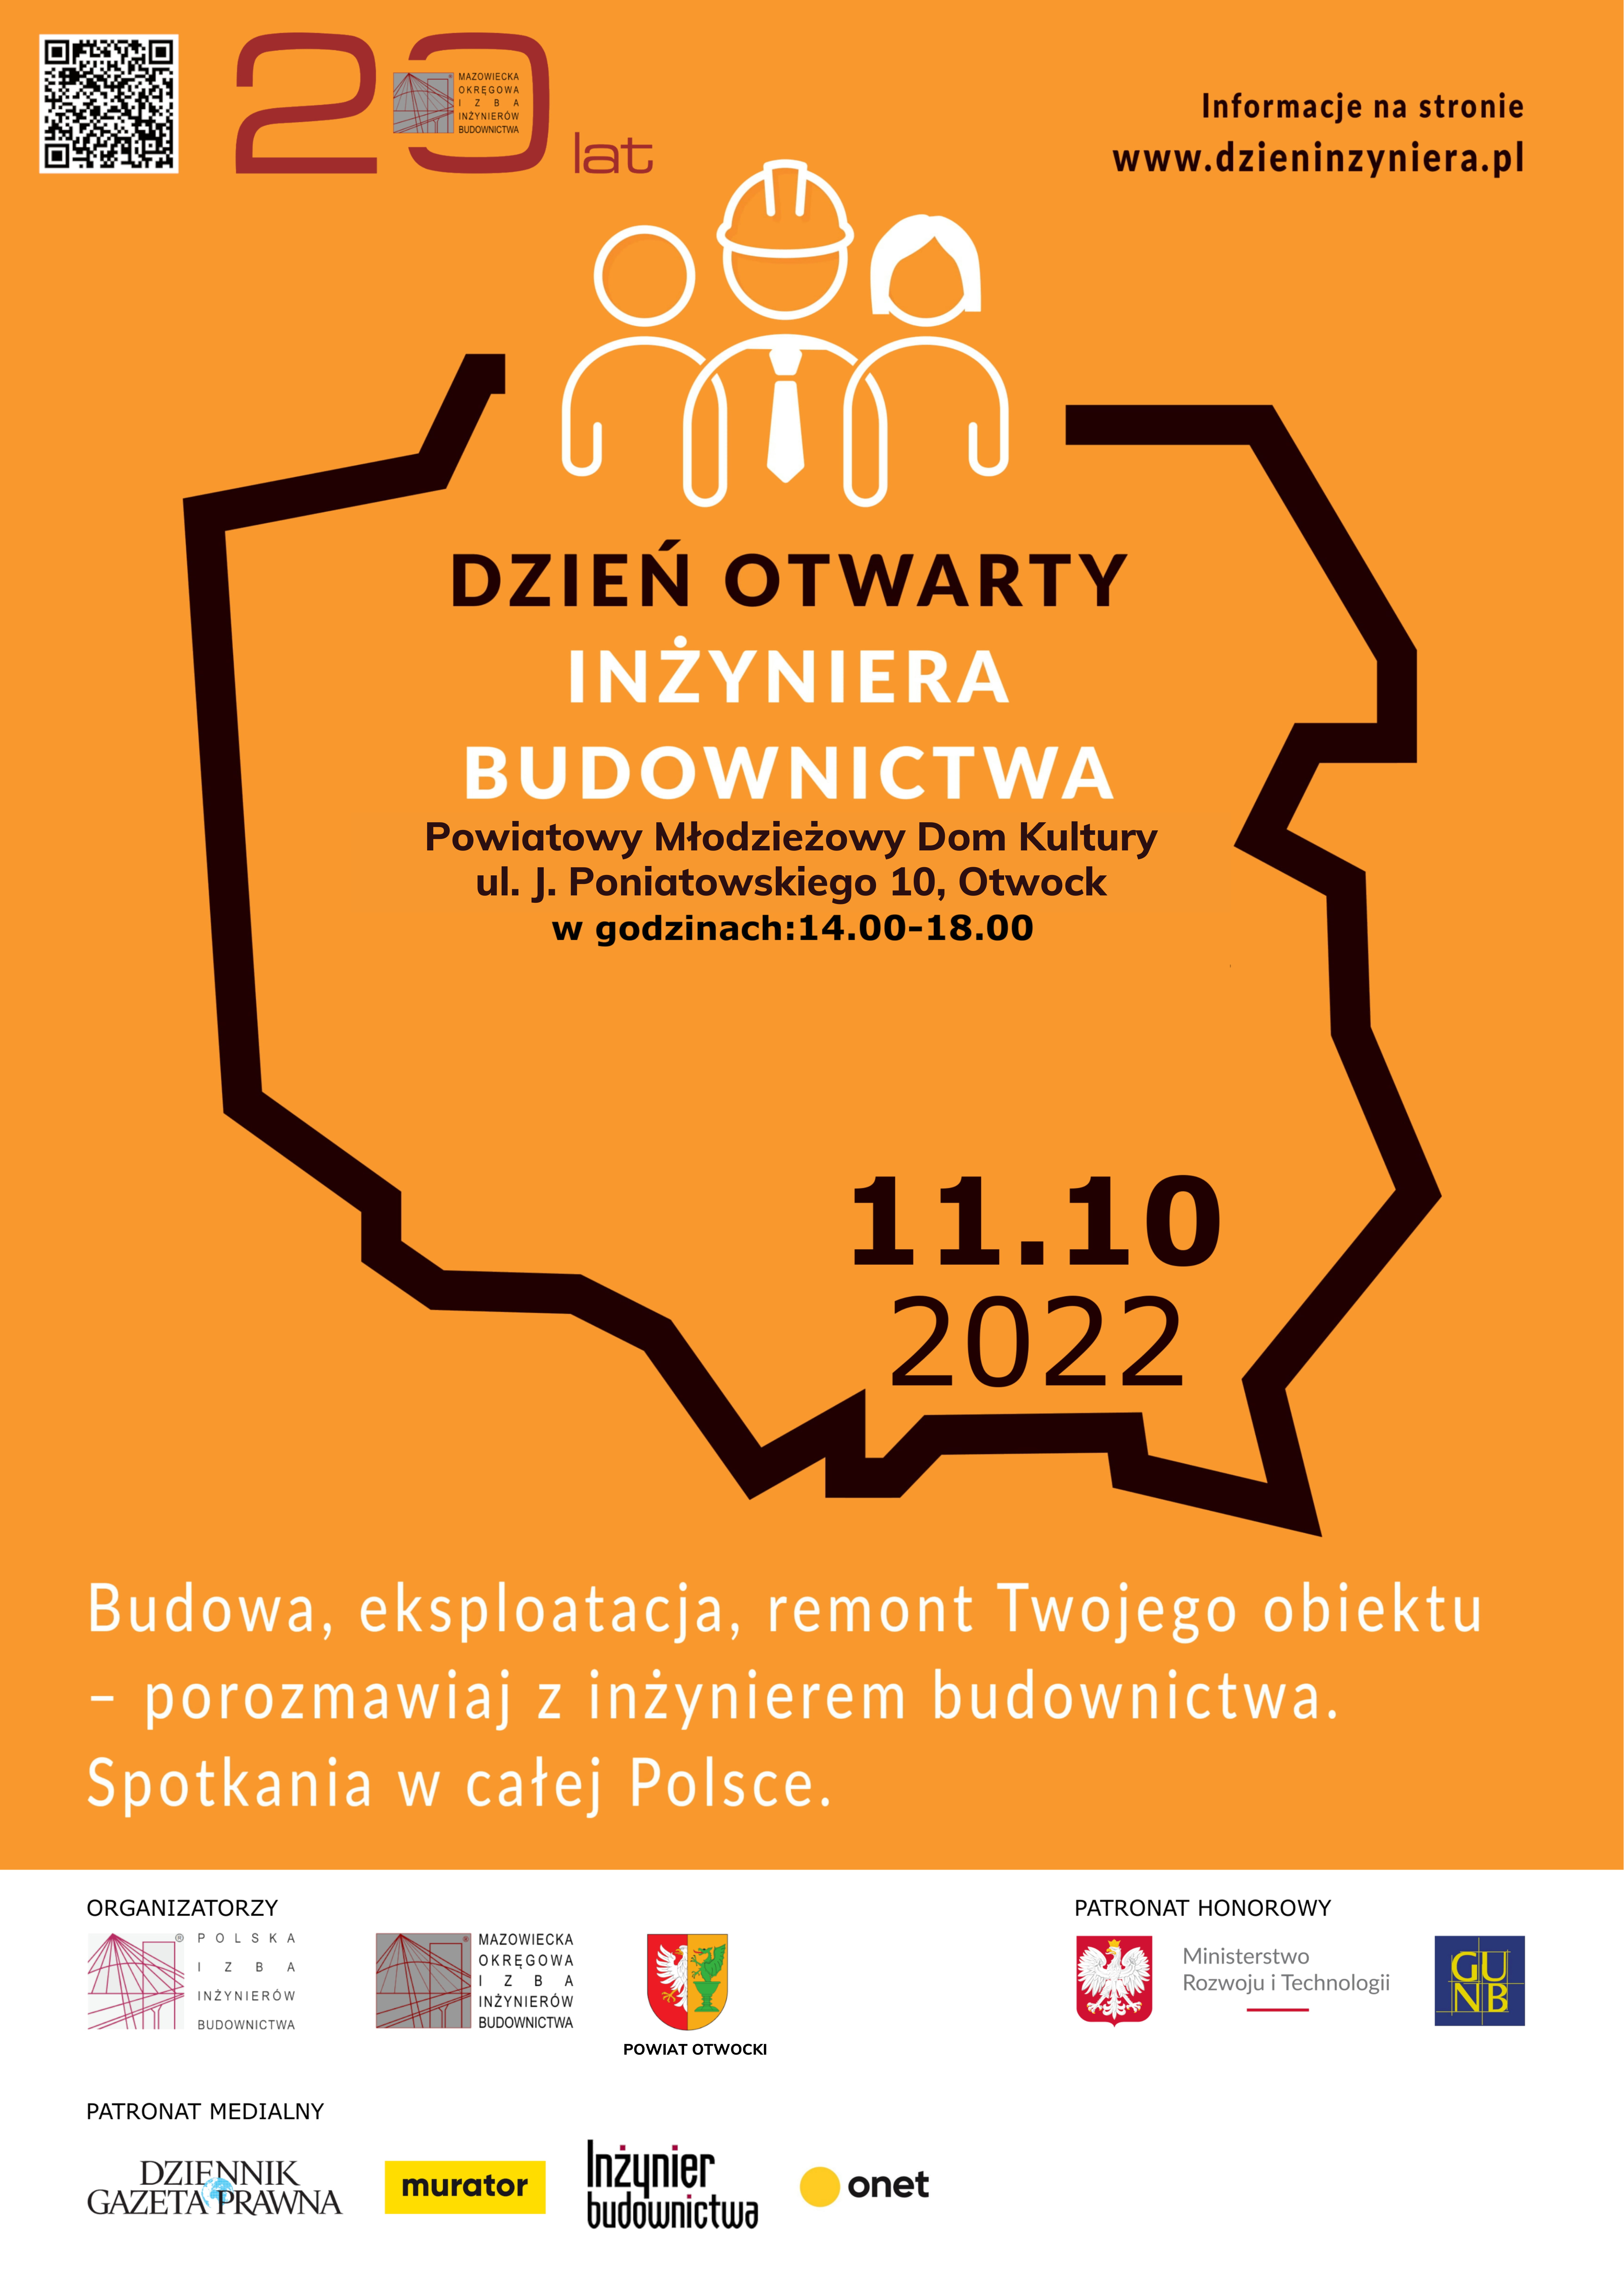 Dzień Otwarty Inżyniera 11 października w Warszawie